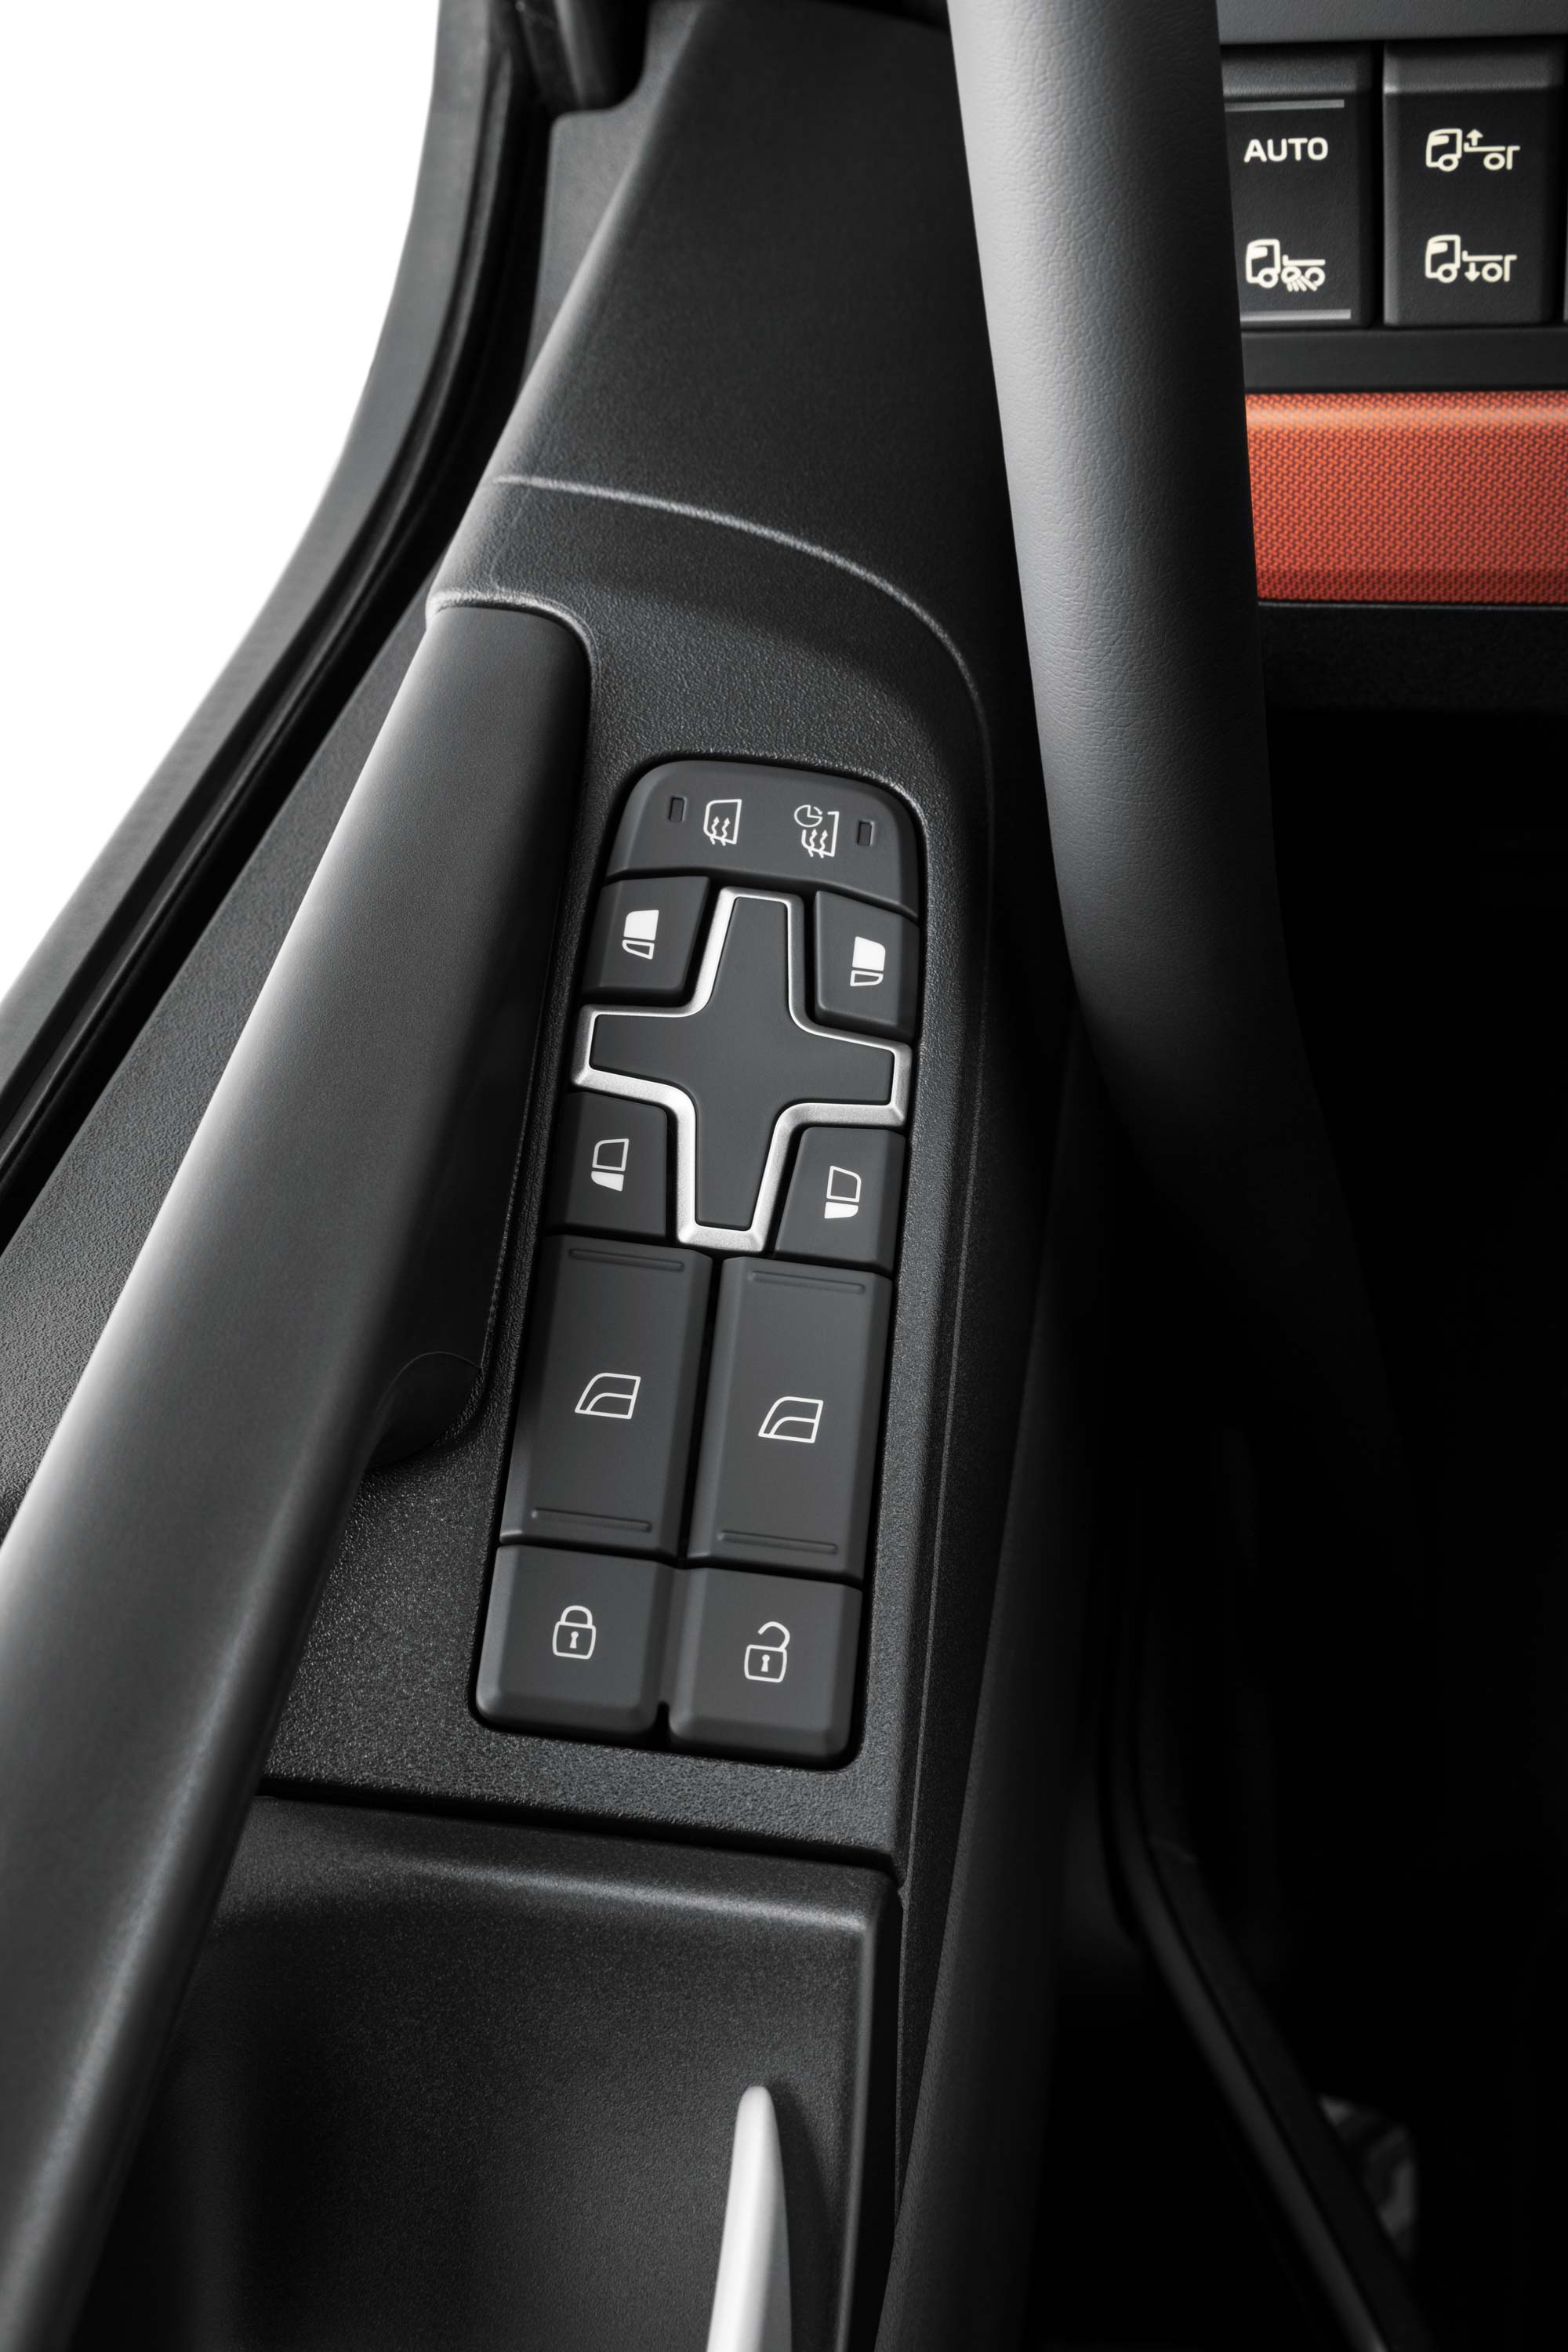 Comandi integrati negli interni del Volvo FH16 per facilitare l'accesso.